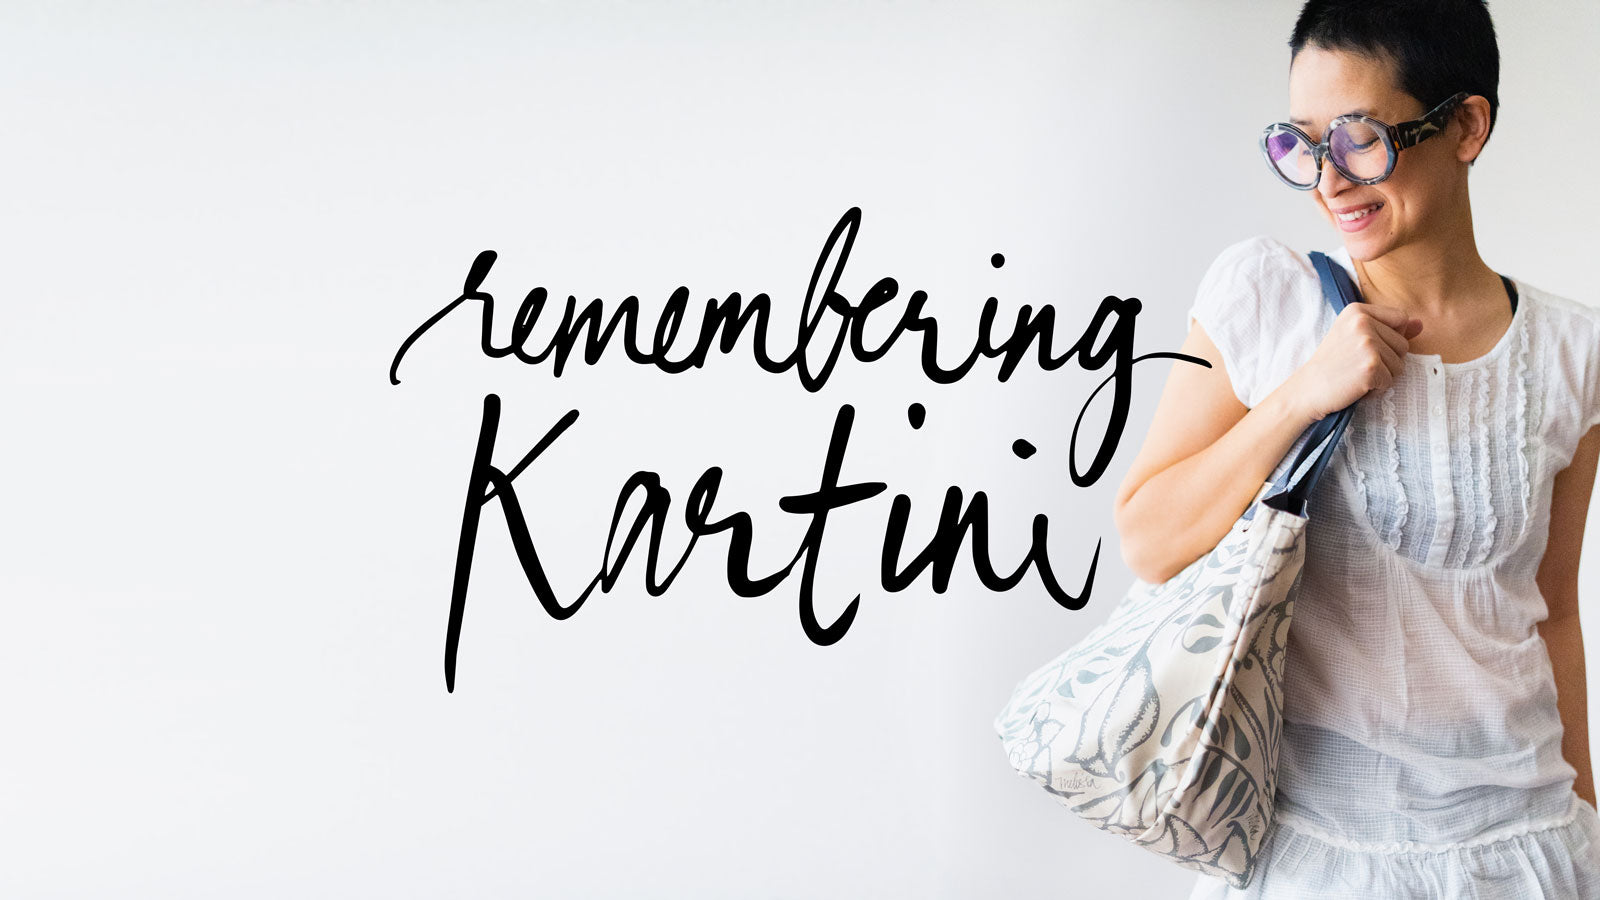 Remembering Kartini